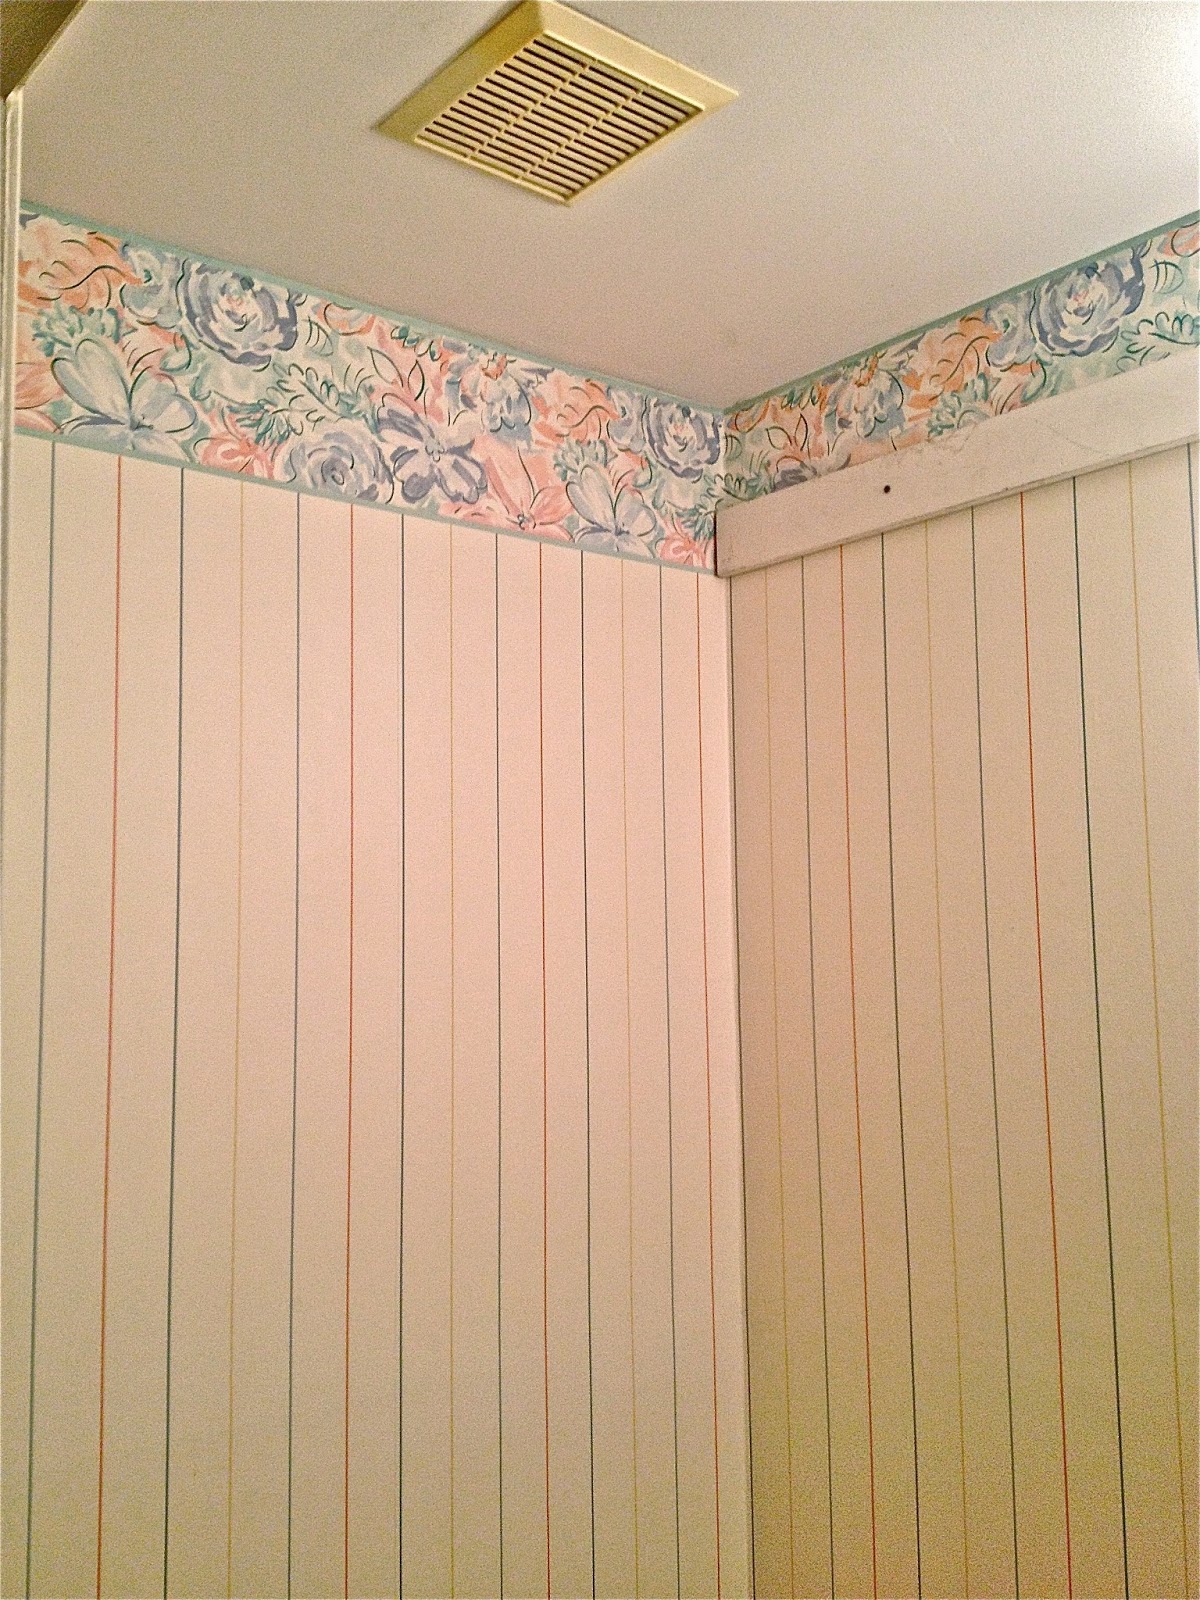 Guest Bathroom Wainscoting Over Wallpaper Ocean Front Shack